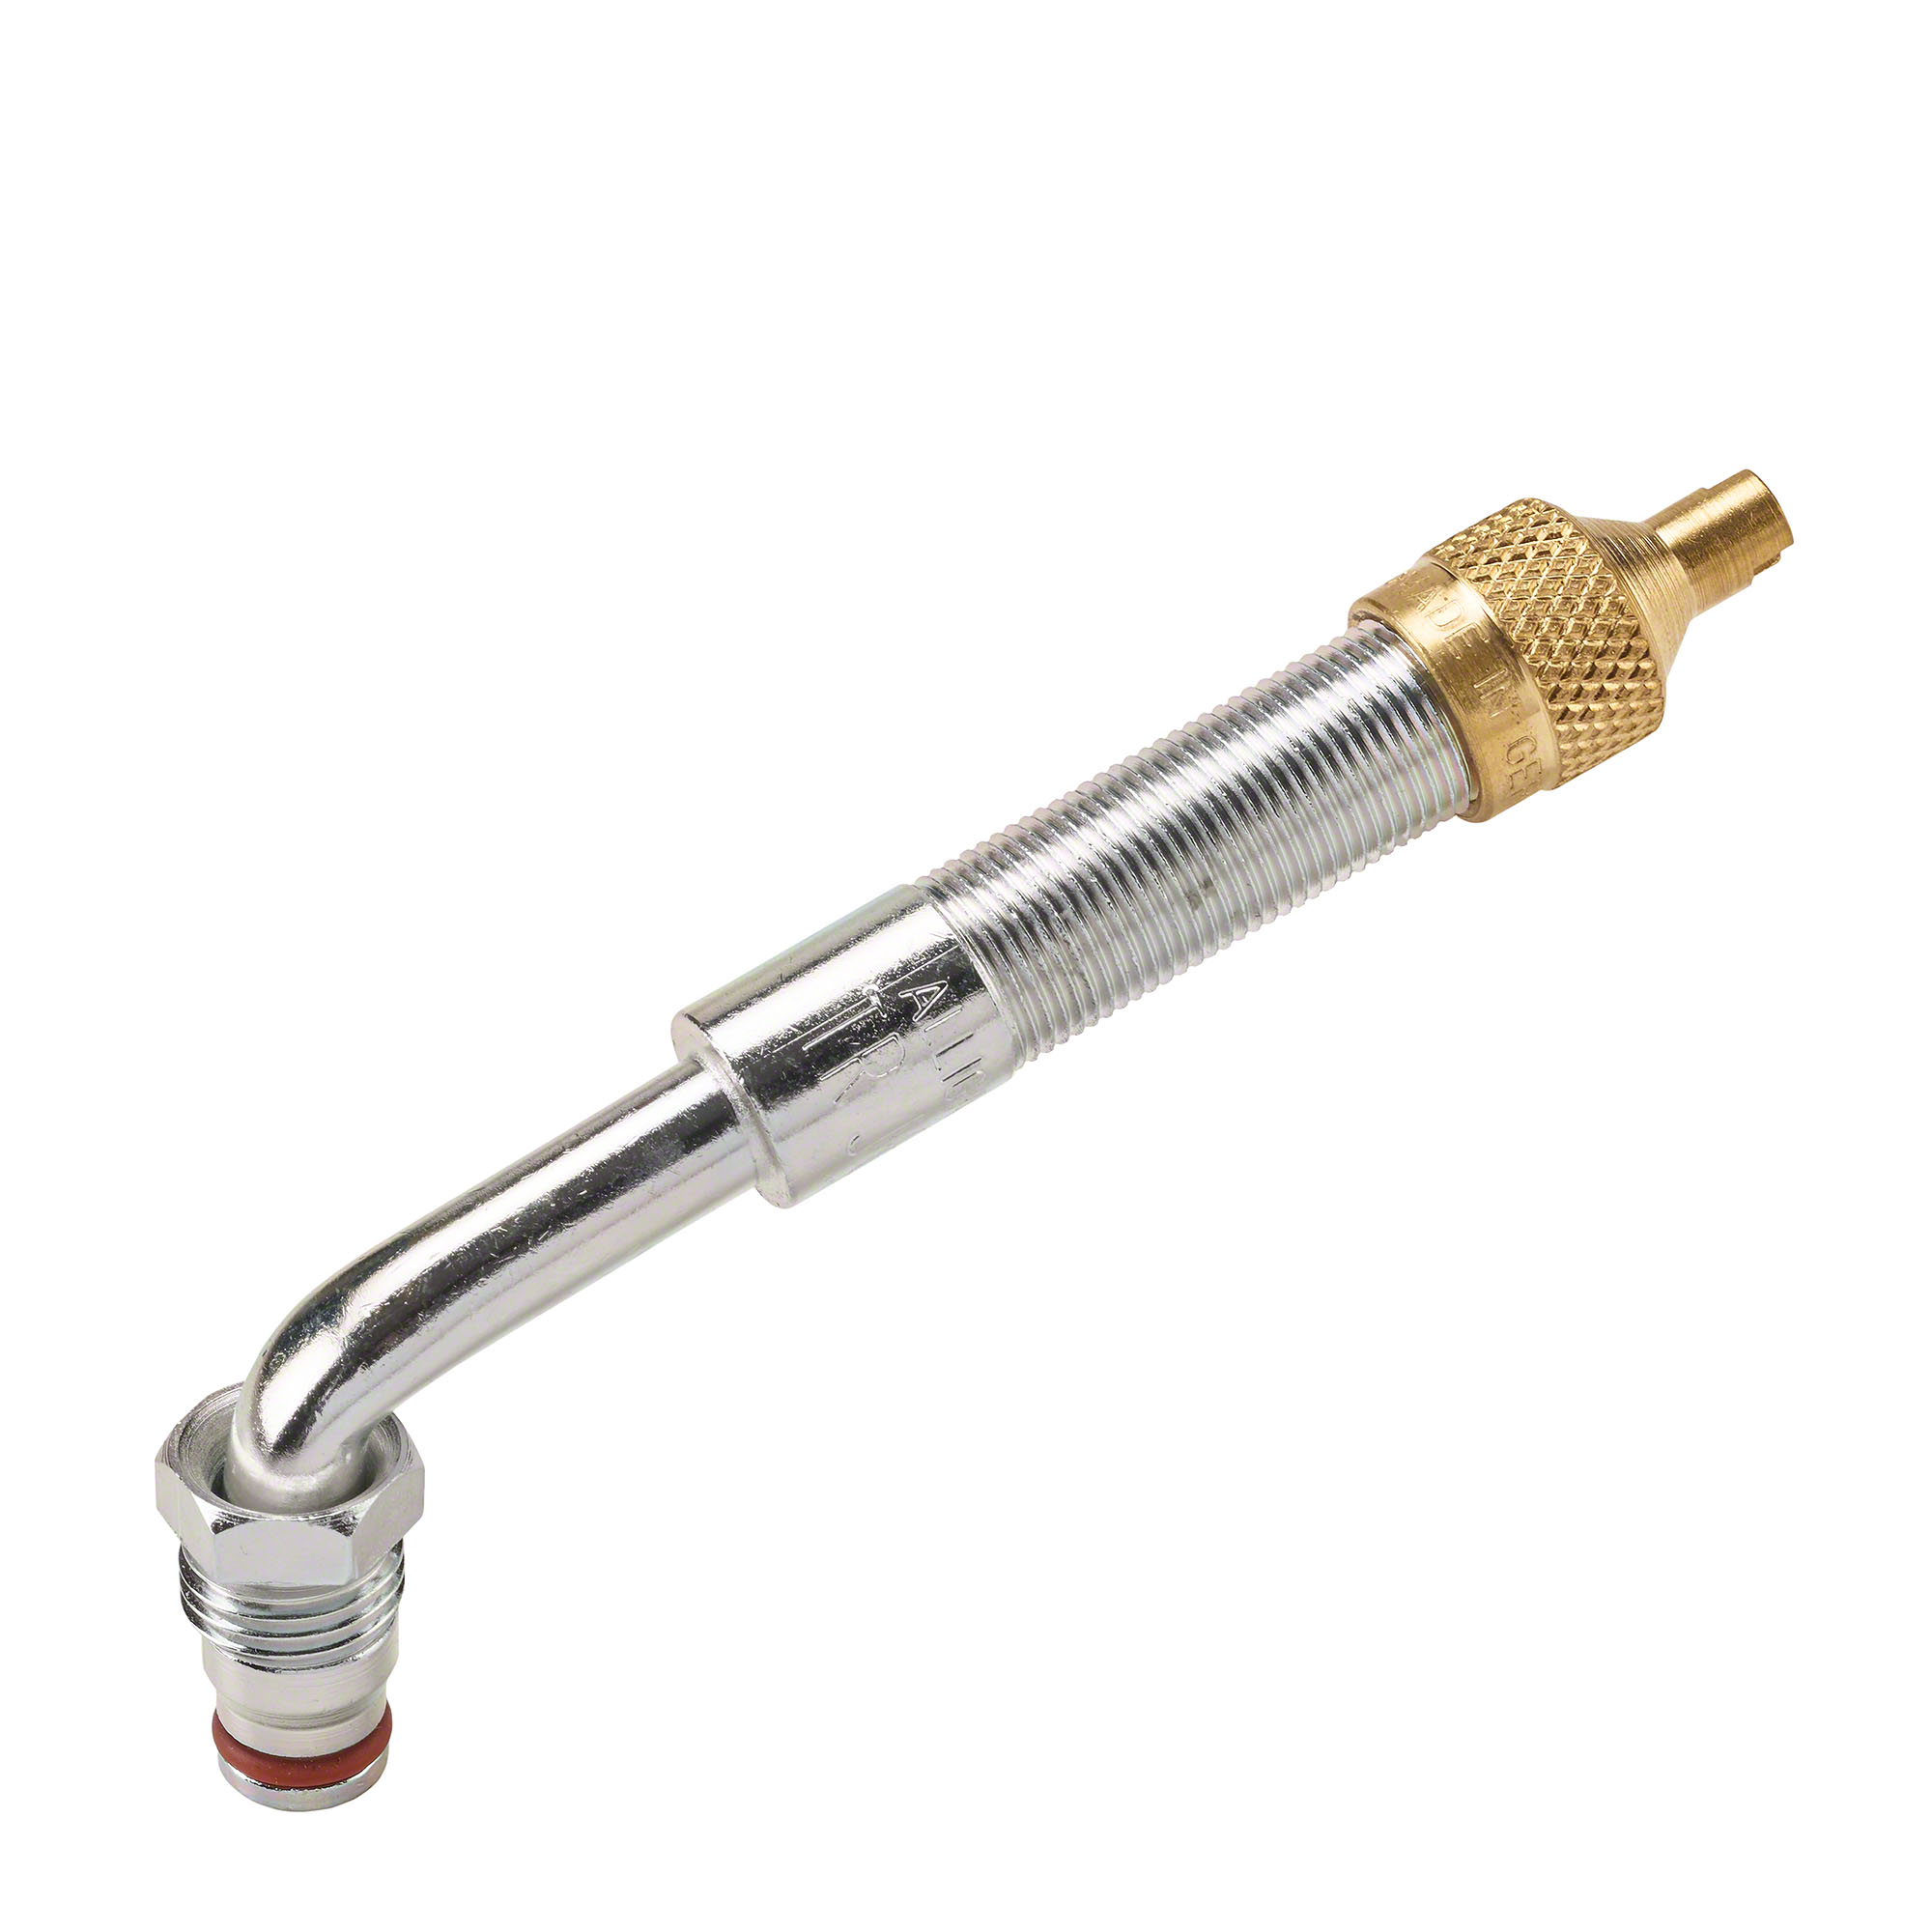 Upper valve section - 80D, bent